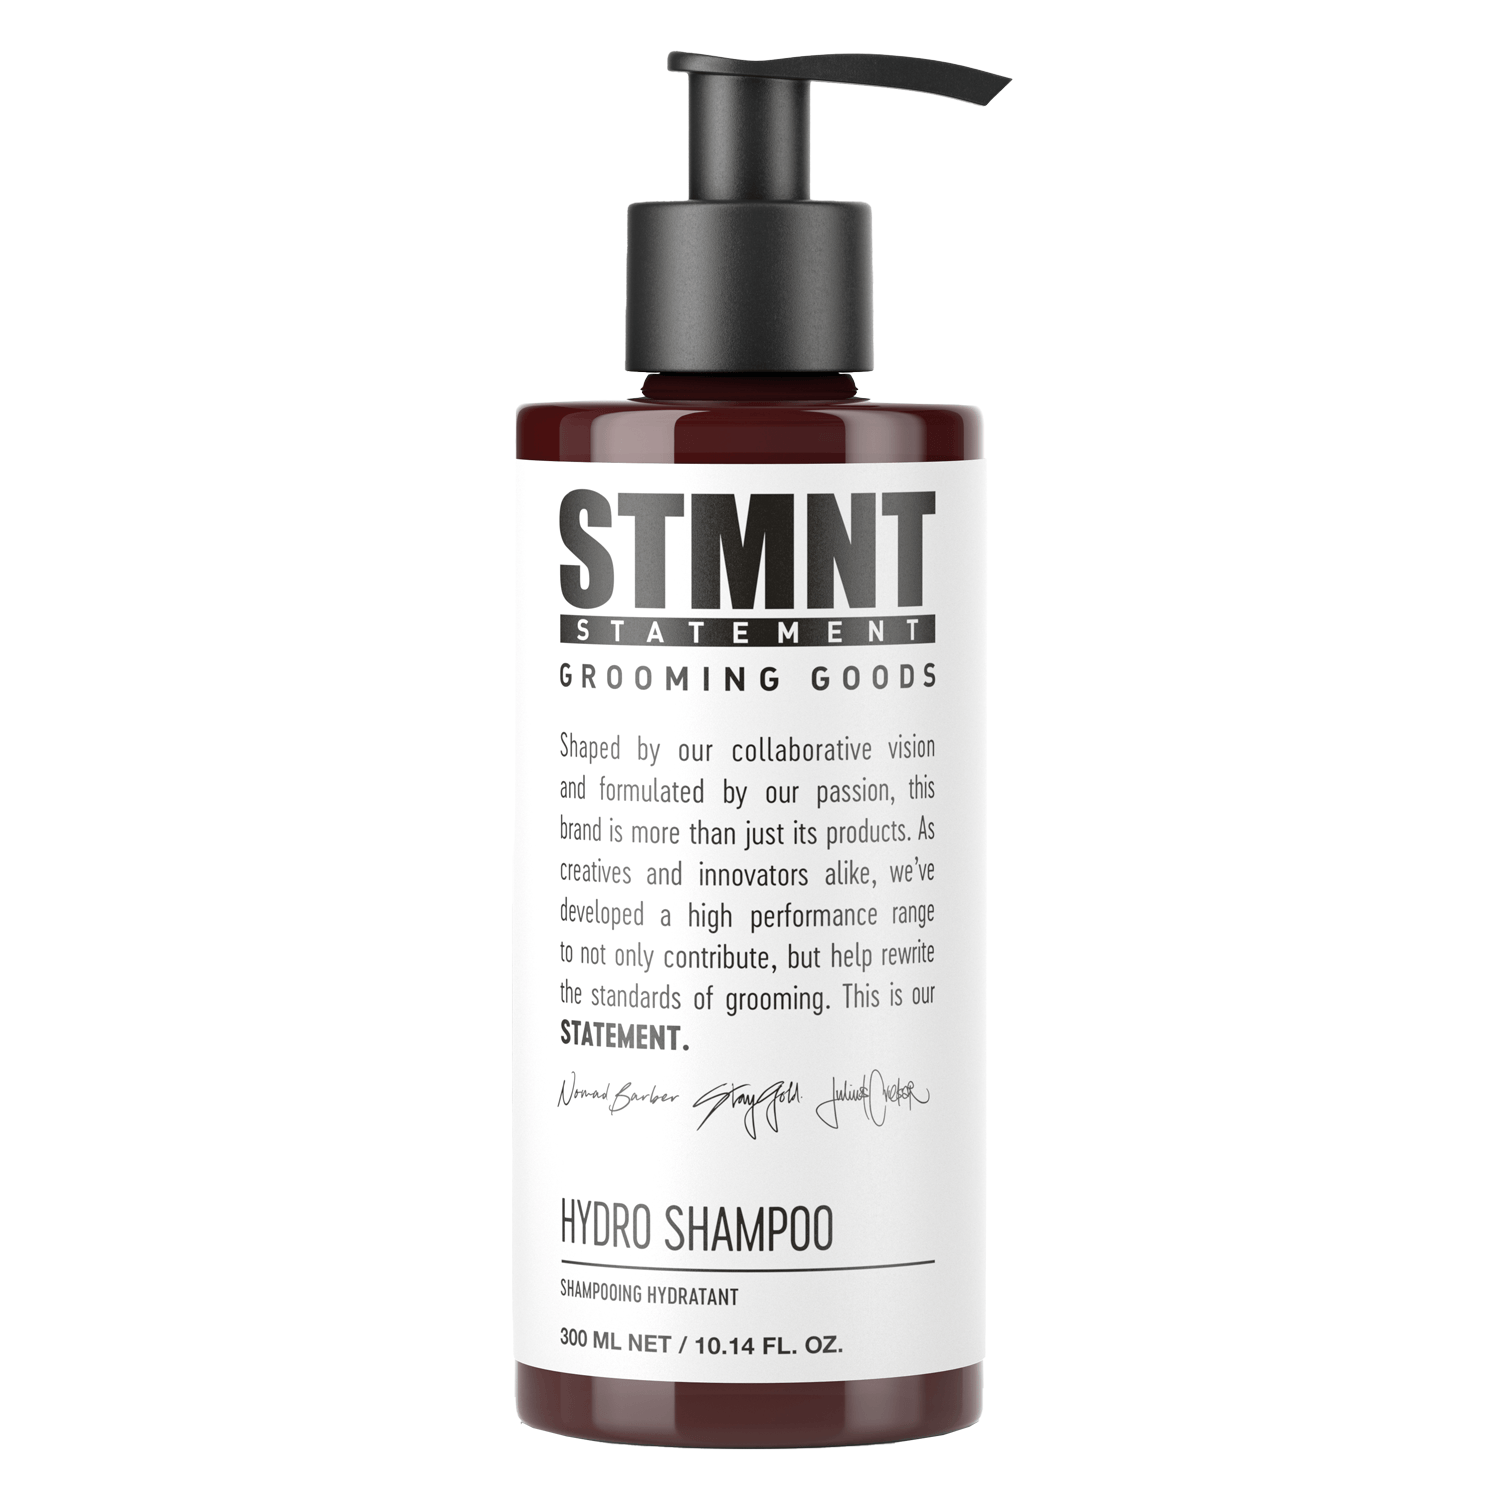 Produktbild von STMNT - Hydro Shampoo